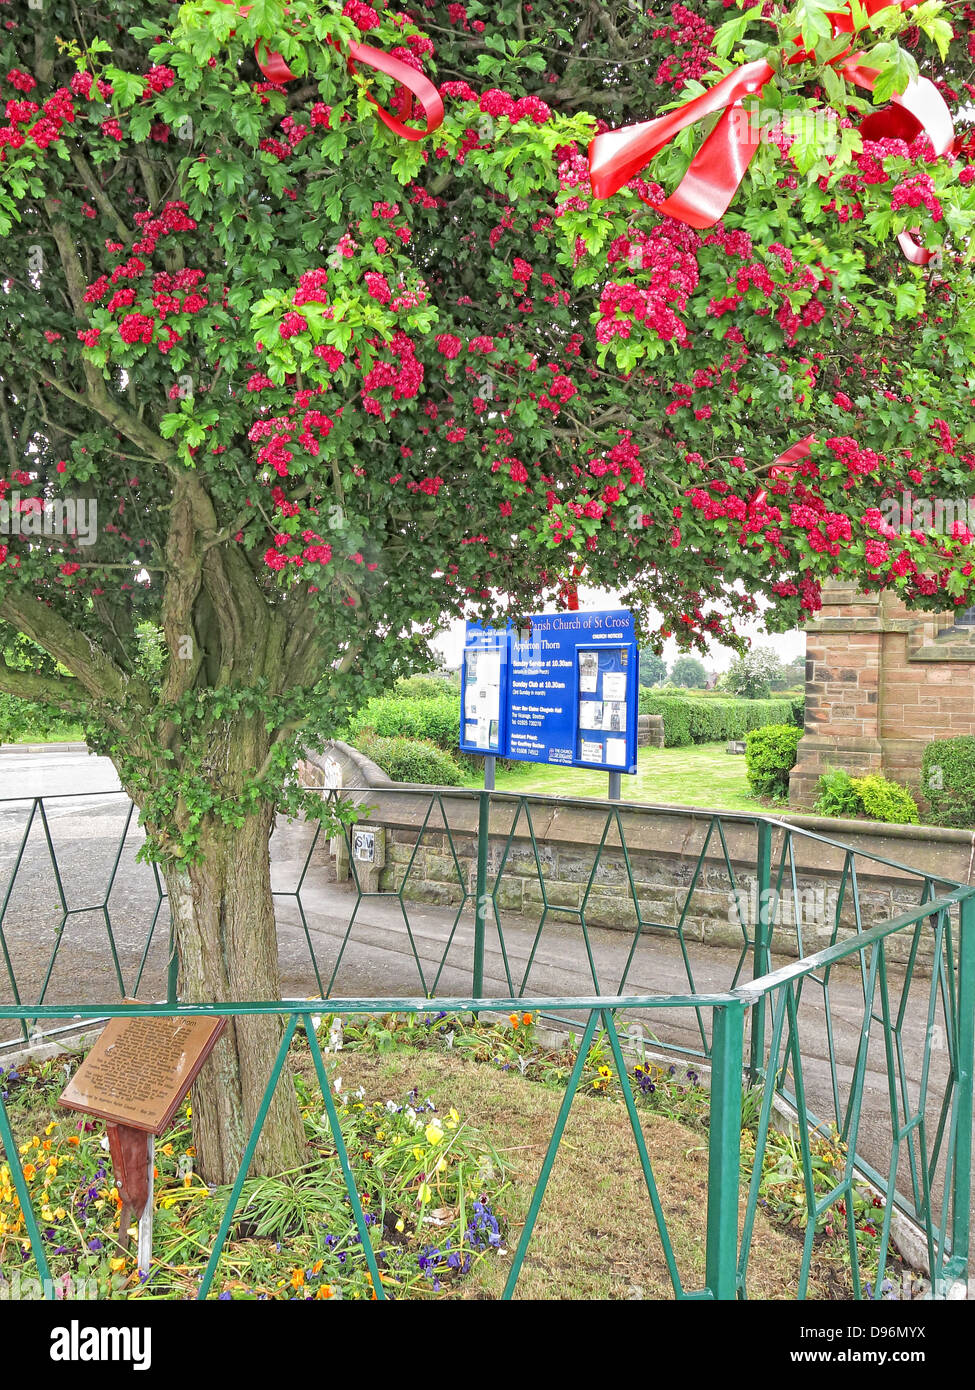 Die berühmten Dornenbaum Appleton Thorn Village, gekleidet in Warrington, England für die jährliche Juni "Bawming der Dorn" Stockfoto